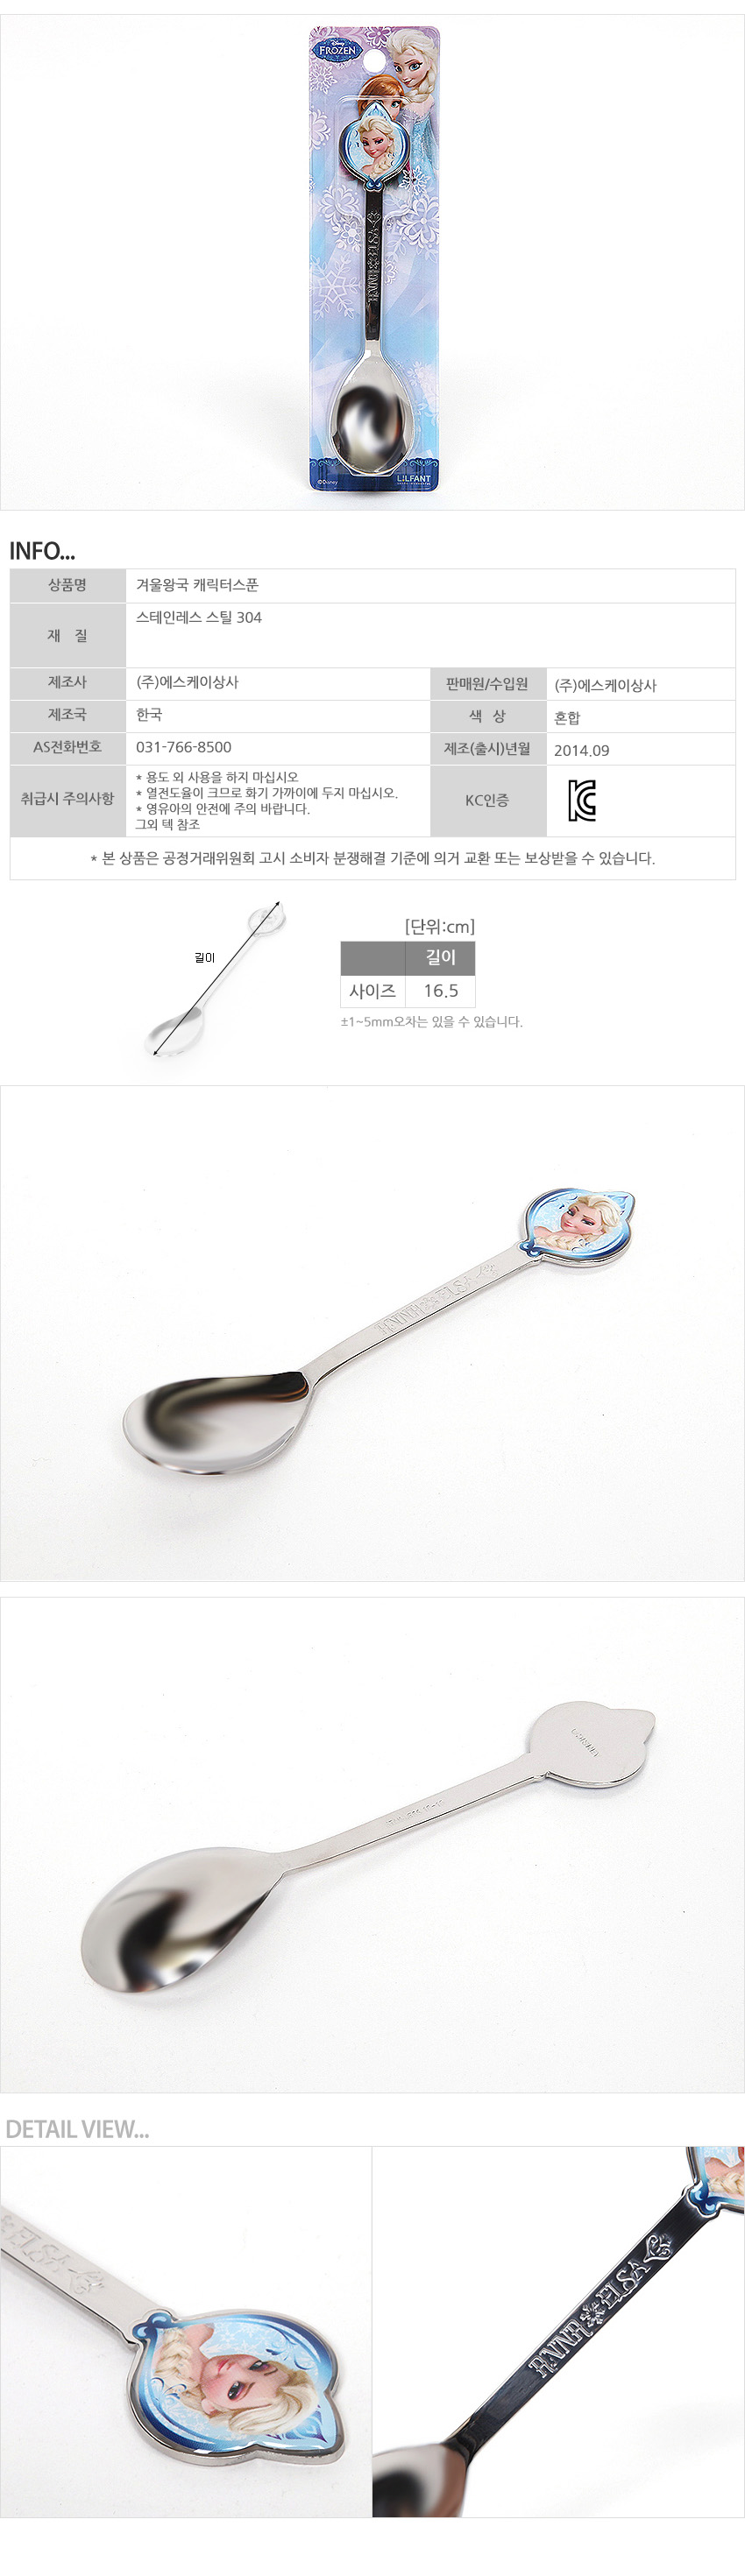 韓國製FROZEN冰雪奇緣不鏽鋼湯匙